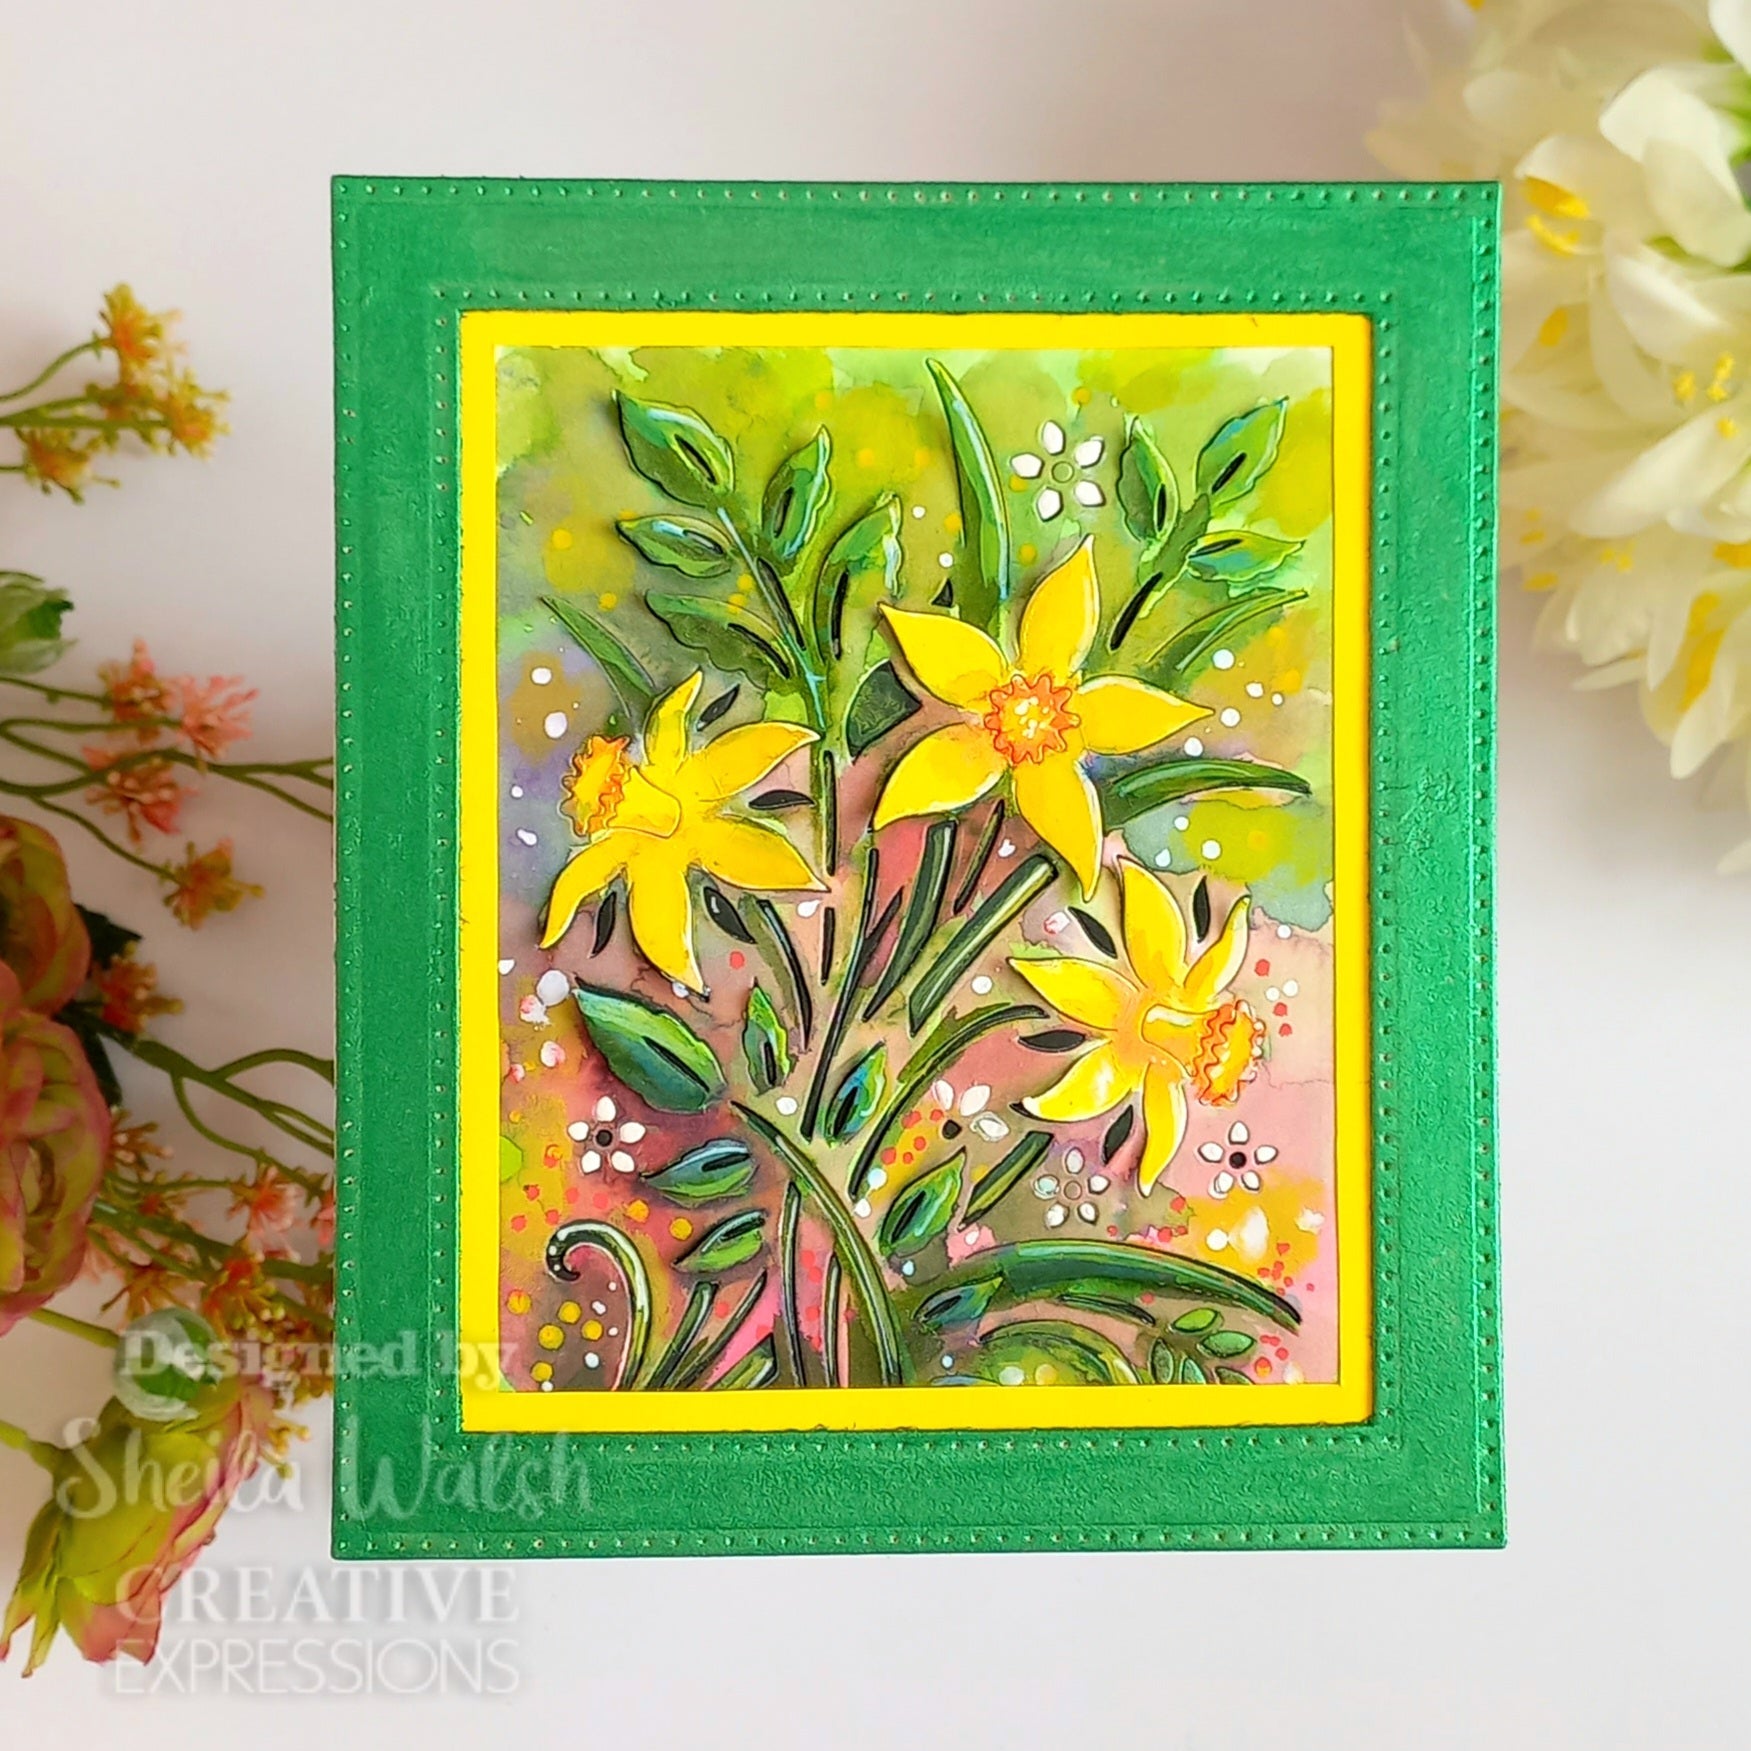 Creative Expressions Paper Cuts Cut & Lift Dancing Daffodils Craft Die